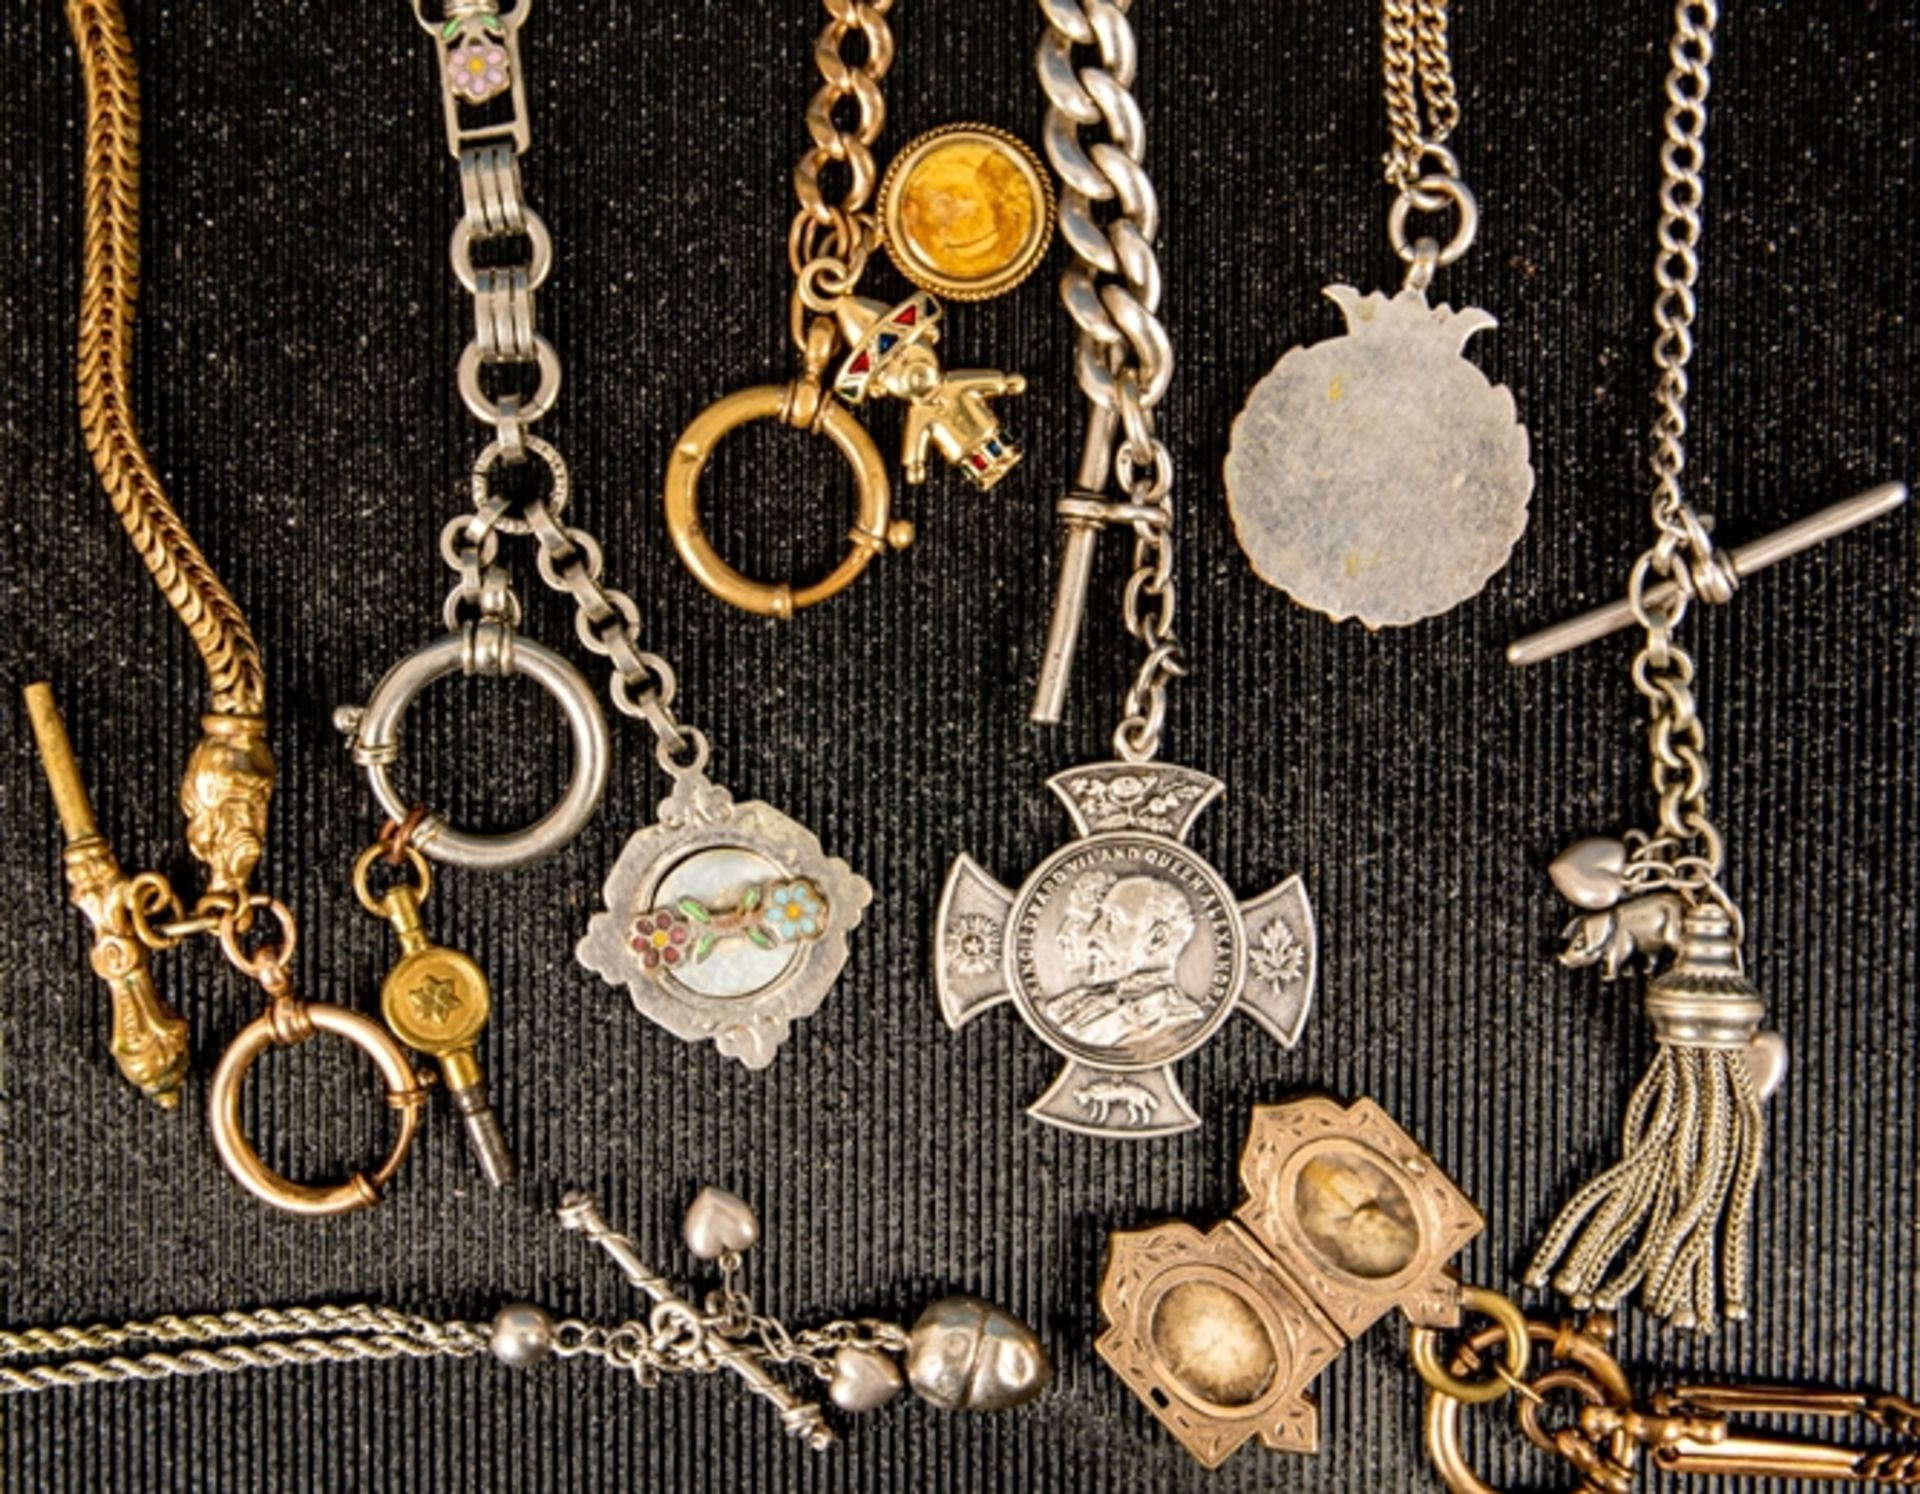 8teilige Sammlung versch. Taschenuhrenketten. Versch. Alter, Längen, Materialie - Bild 6 aus 6